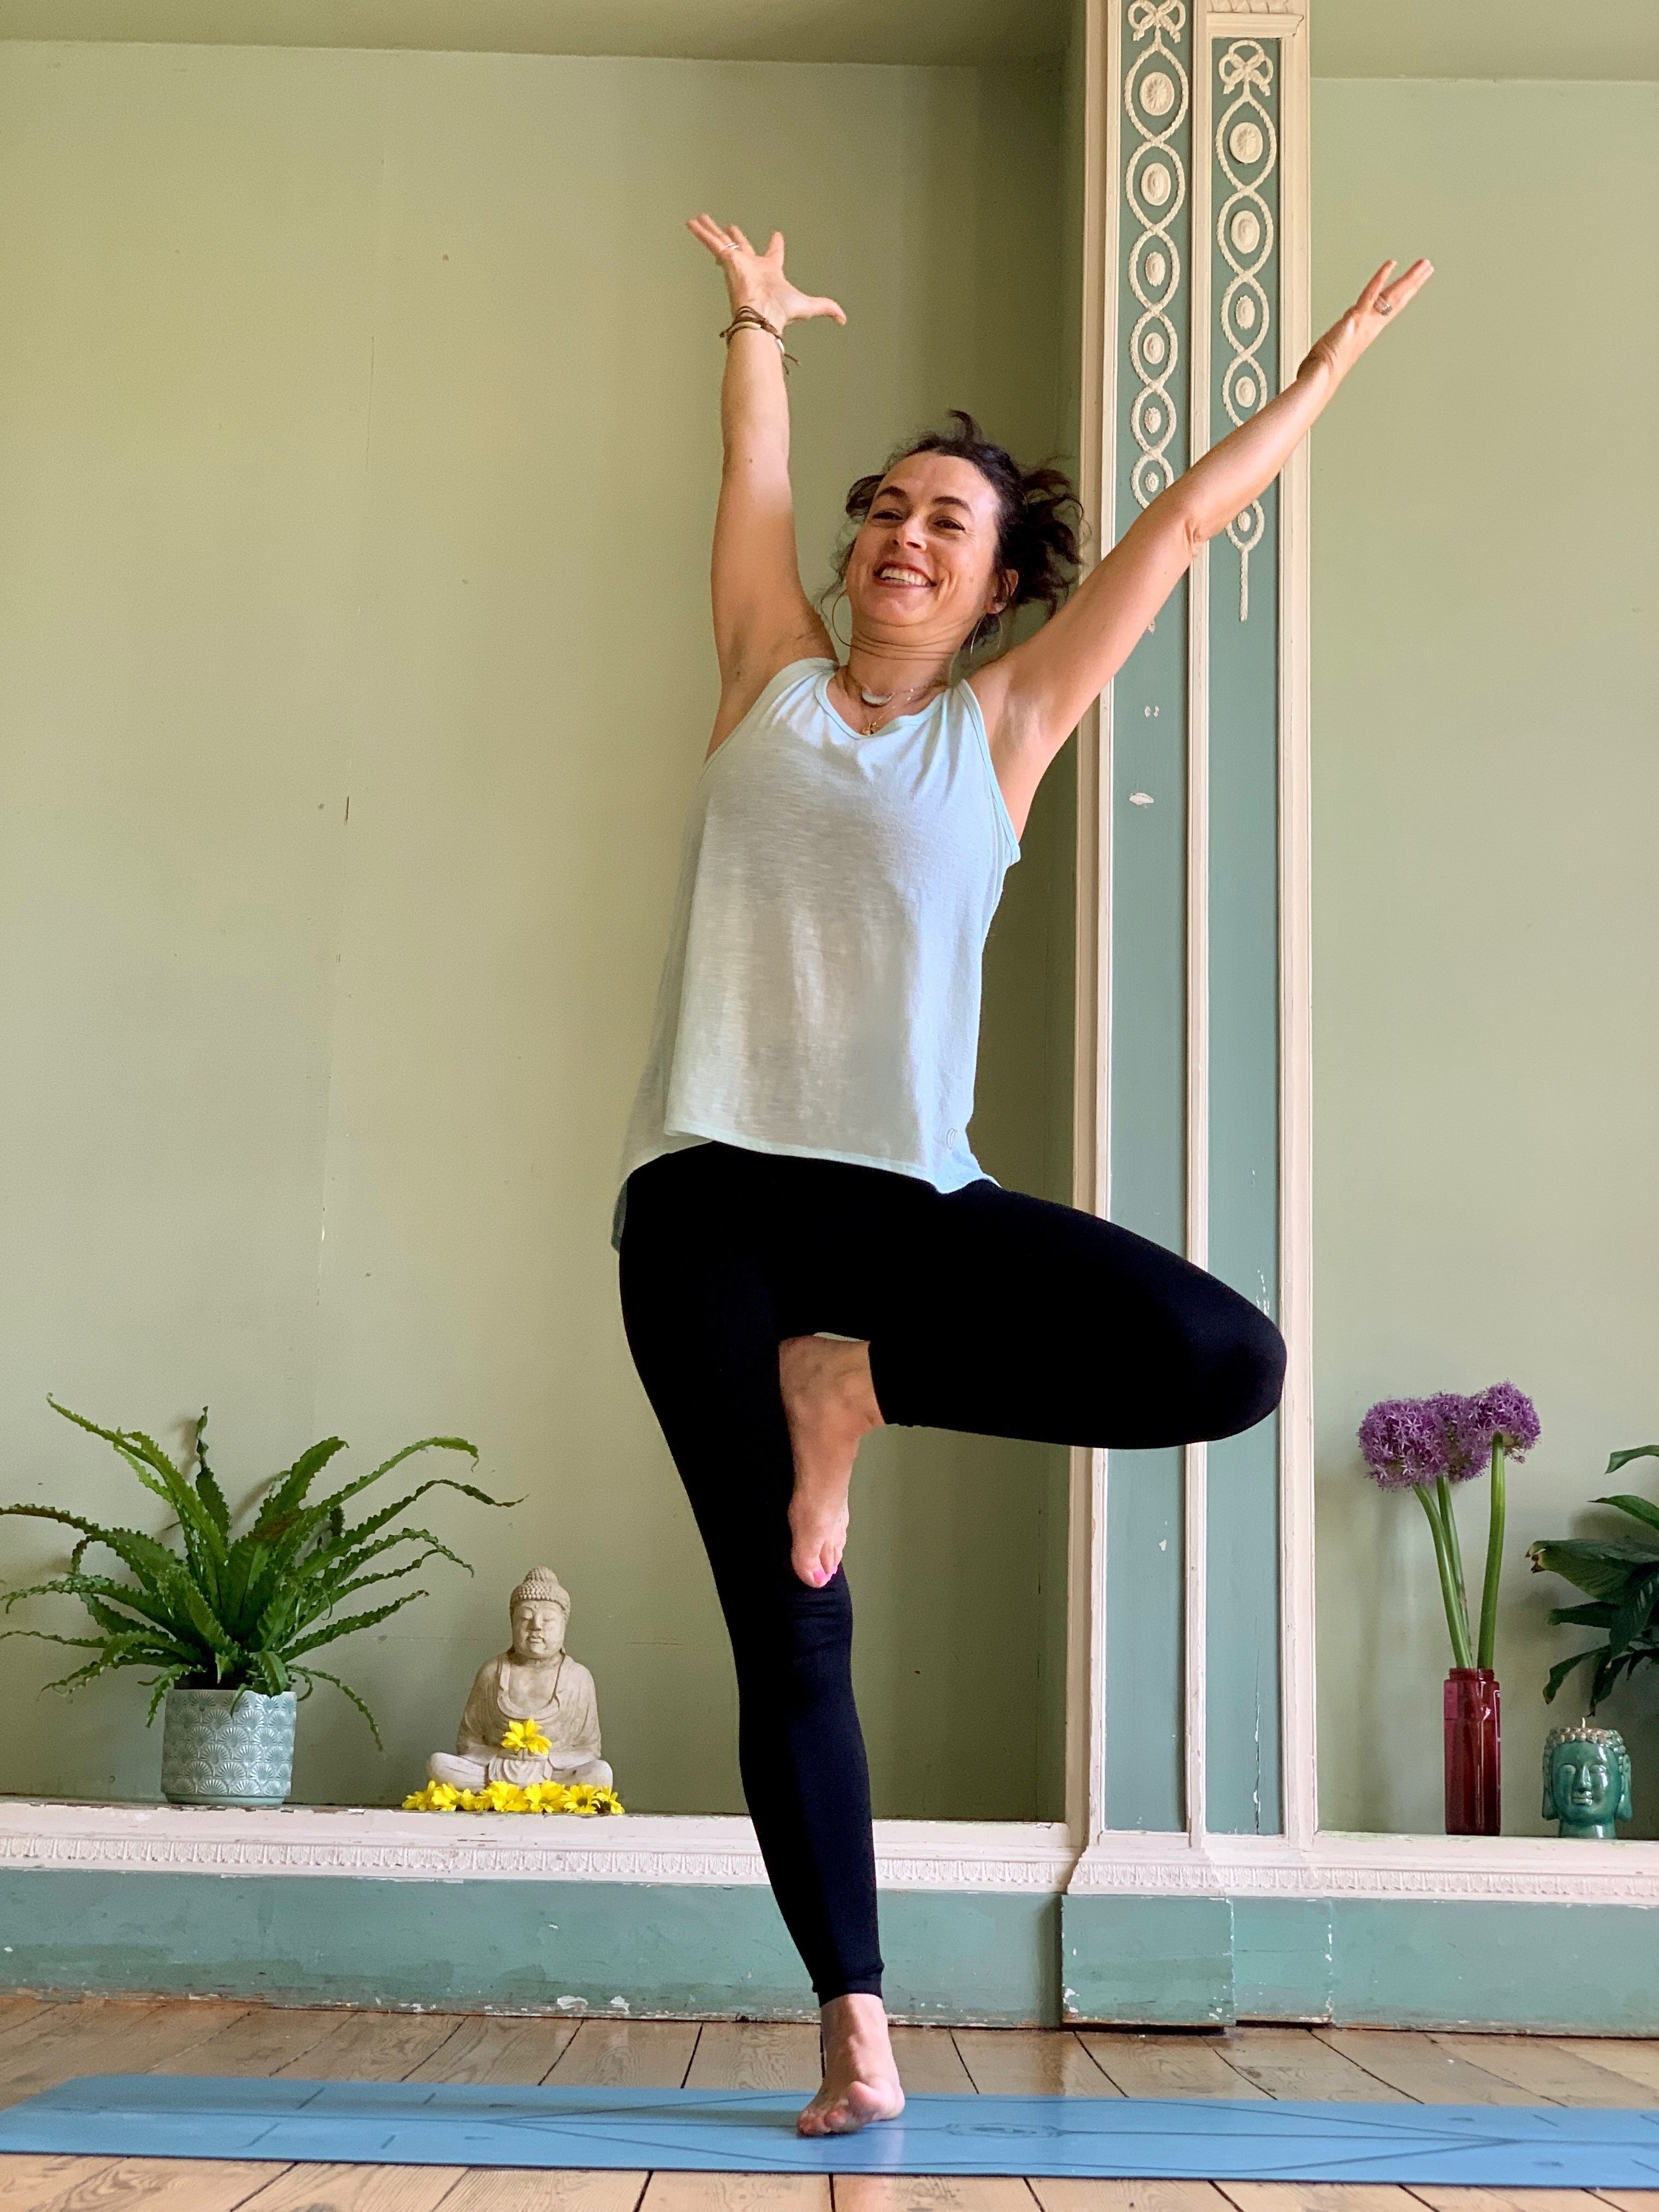 Top 15 Standing Yoga Poses You Need to Know - 7pranayama.com